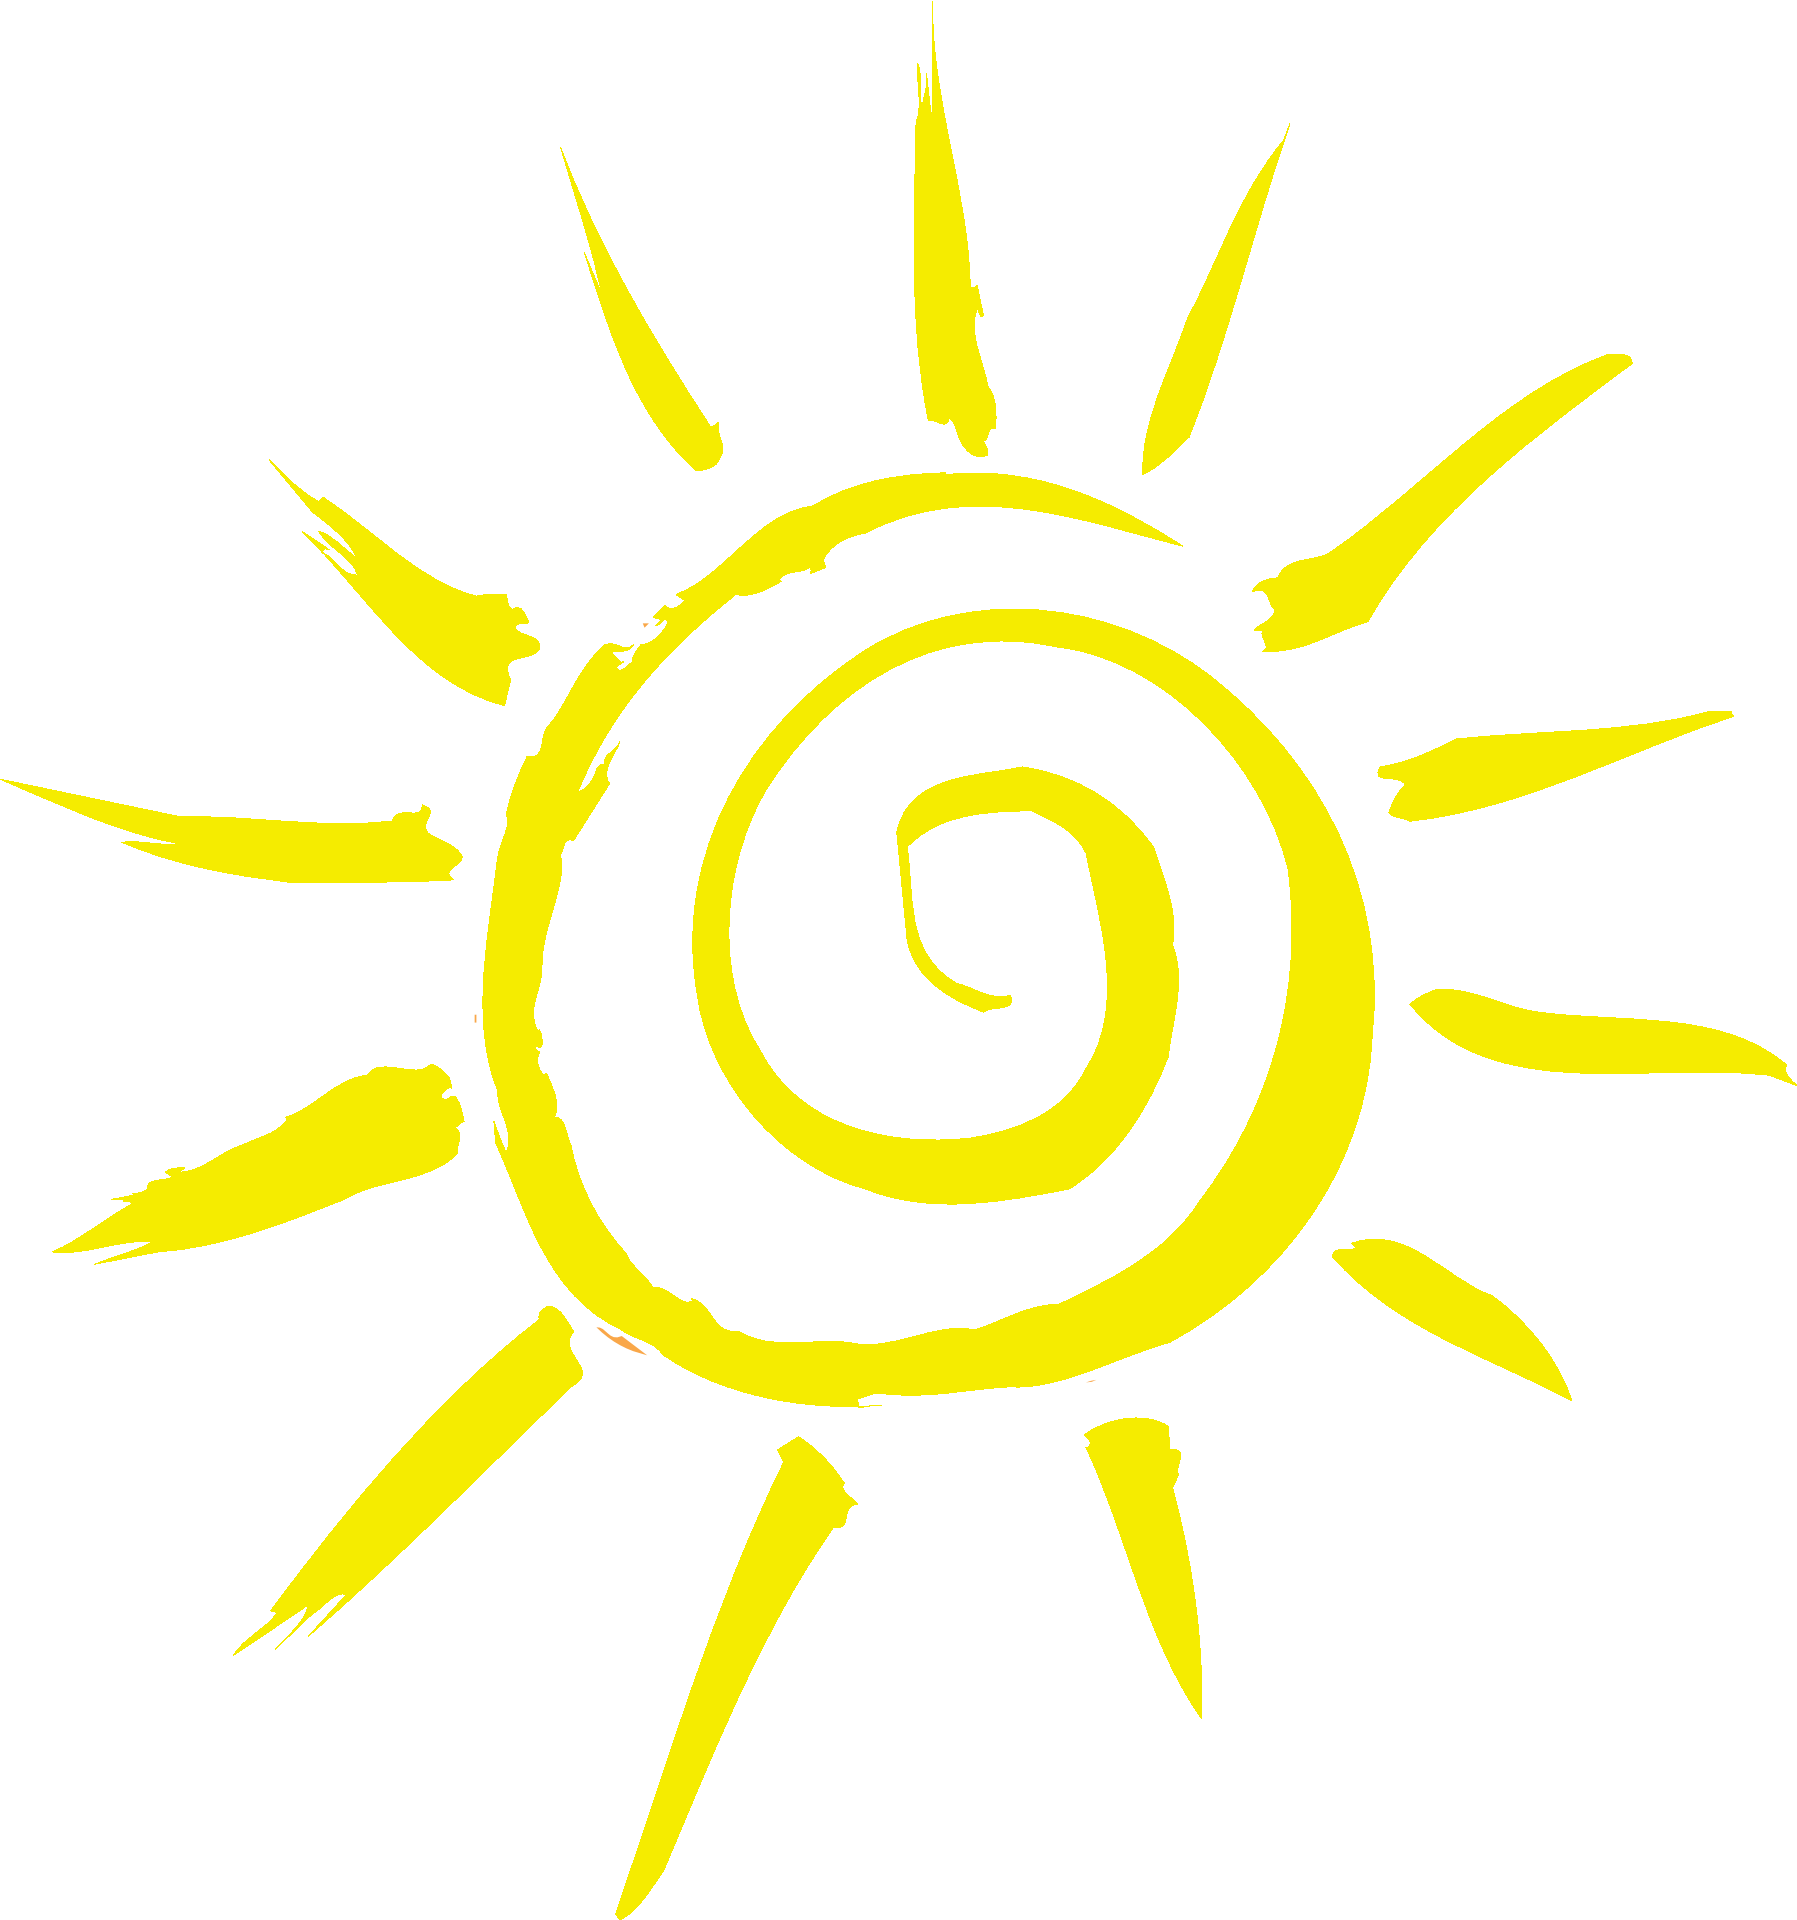 Sun sunshine wellness logo